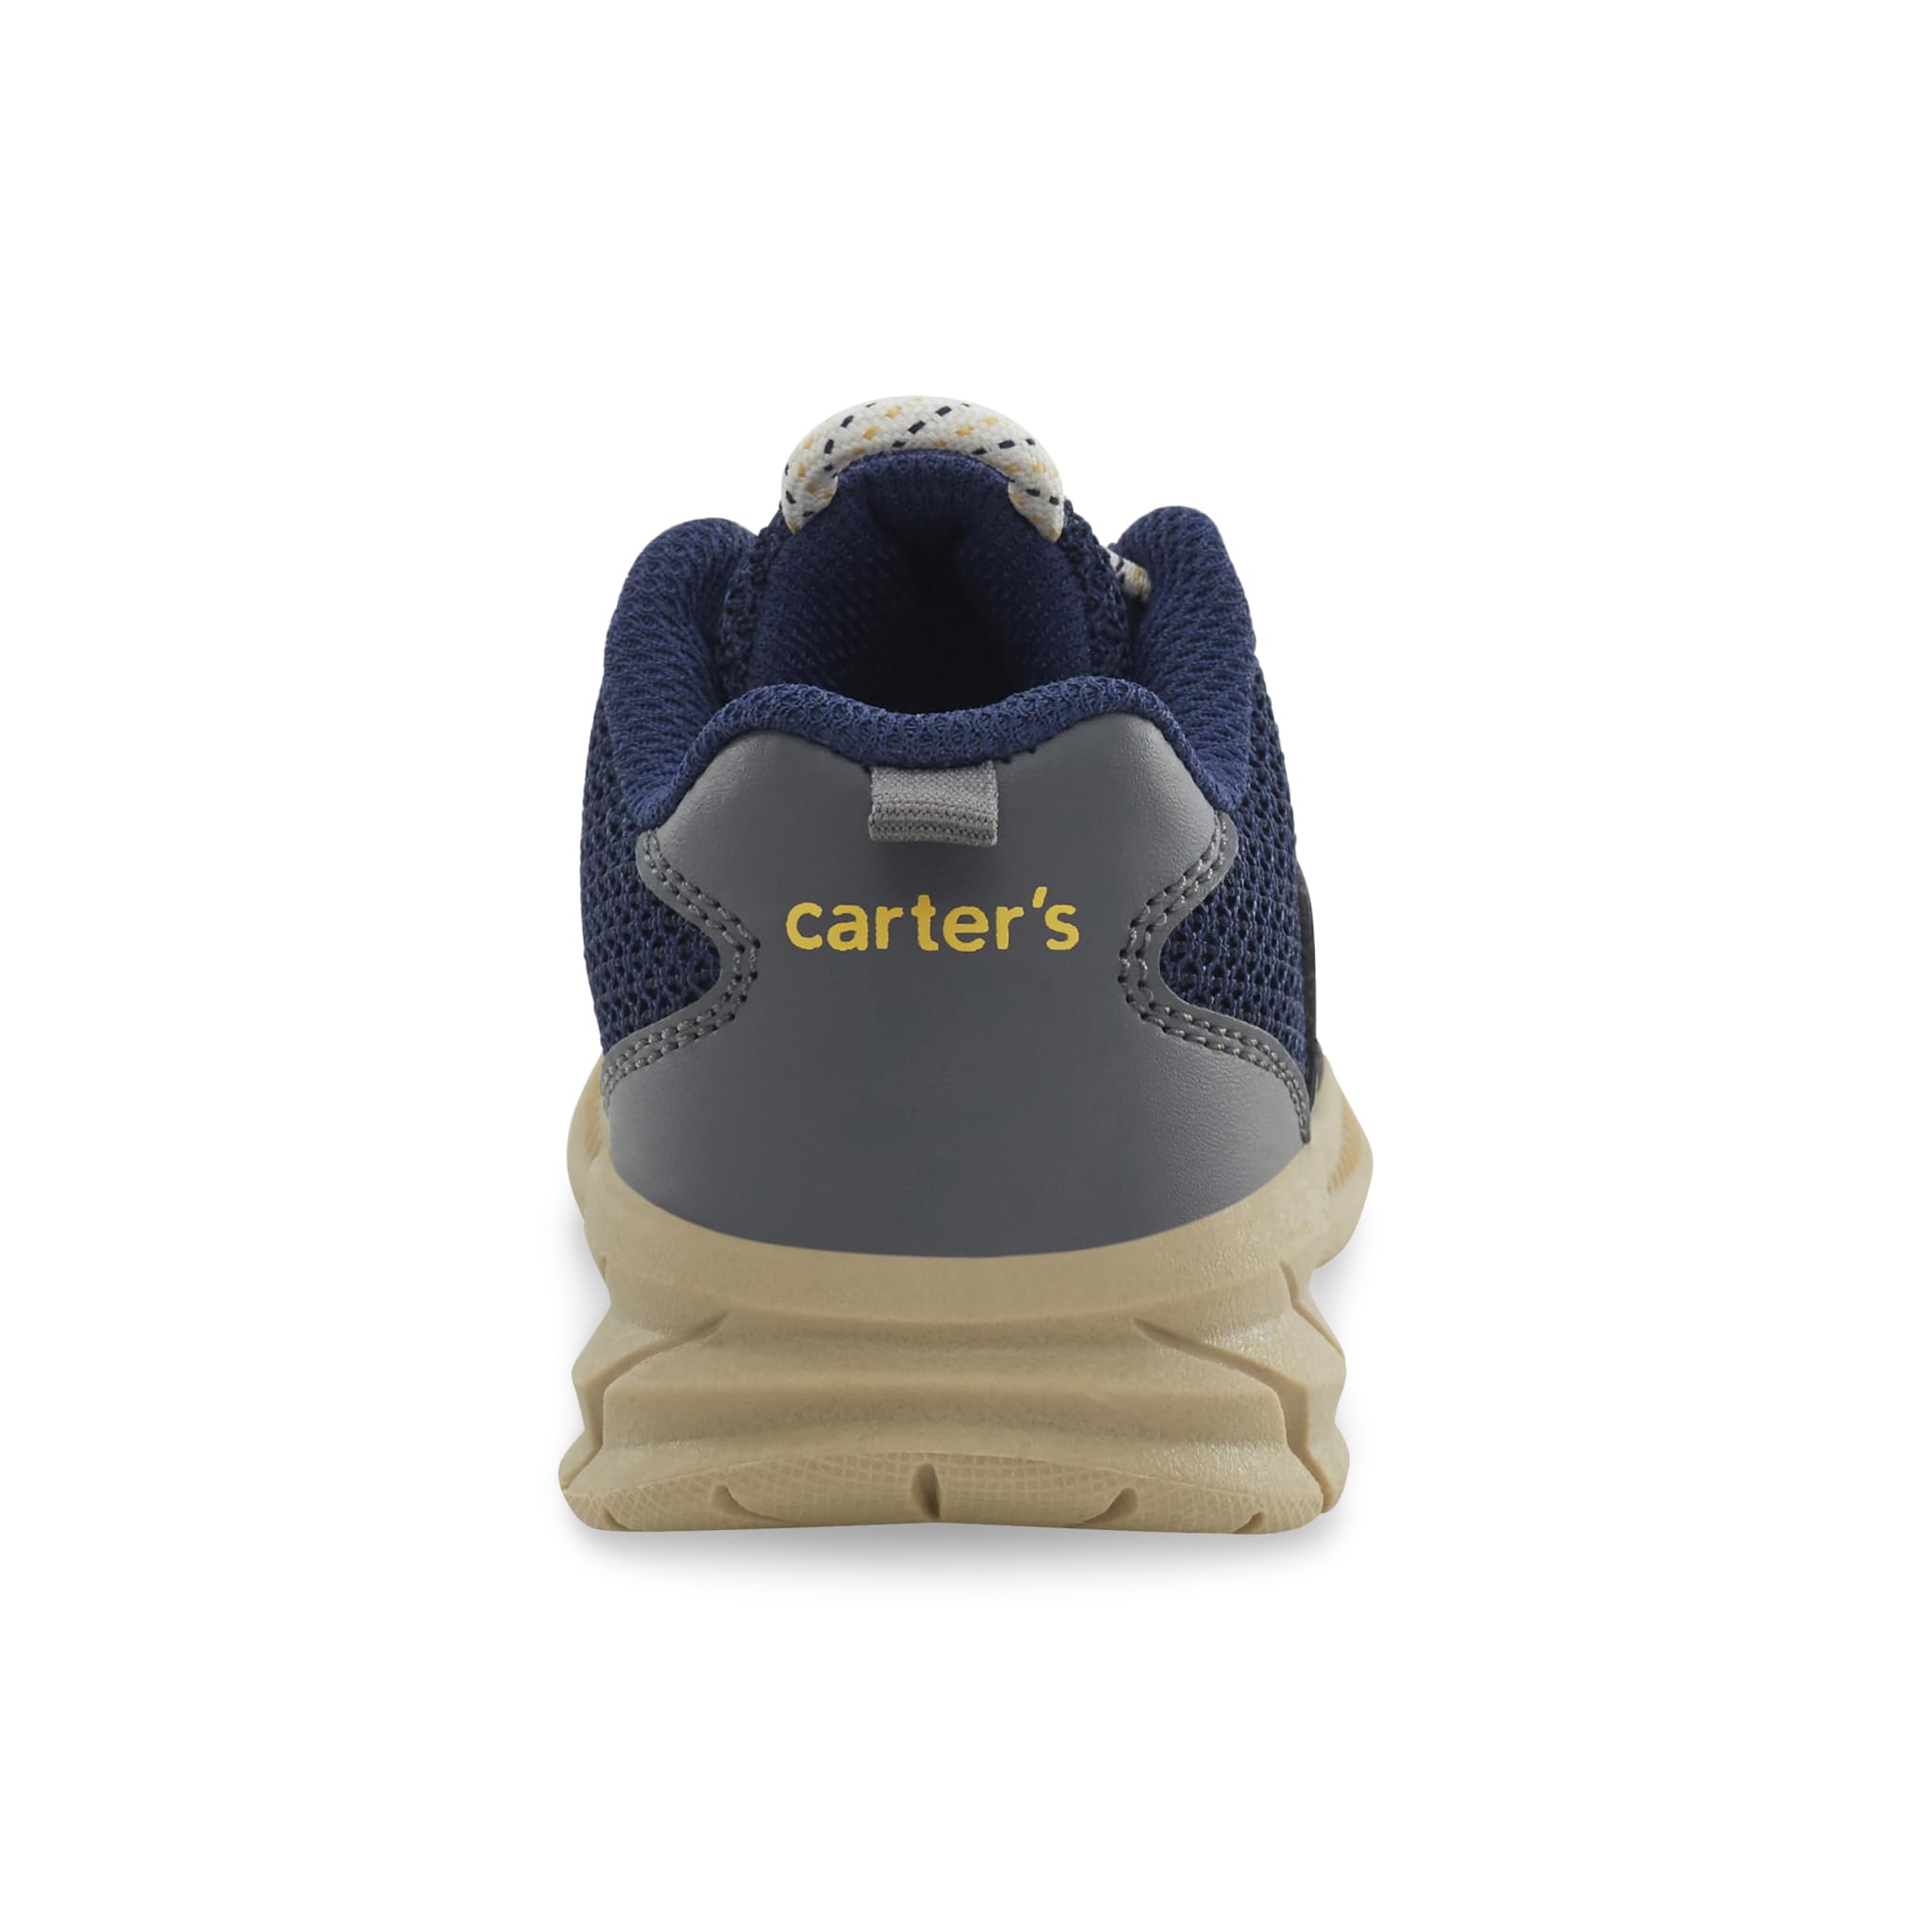 Carter's Unisex-Child Angelo Sneaker